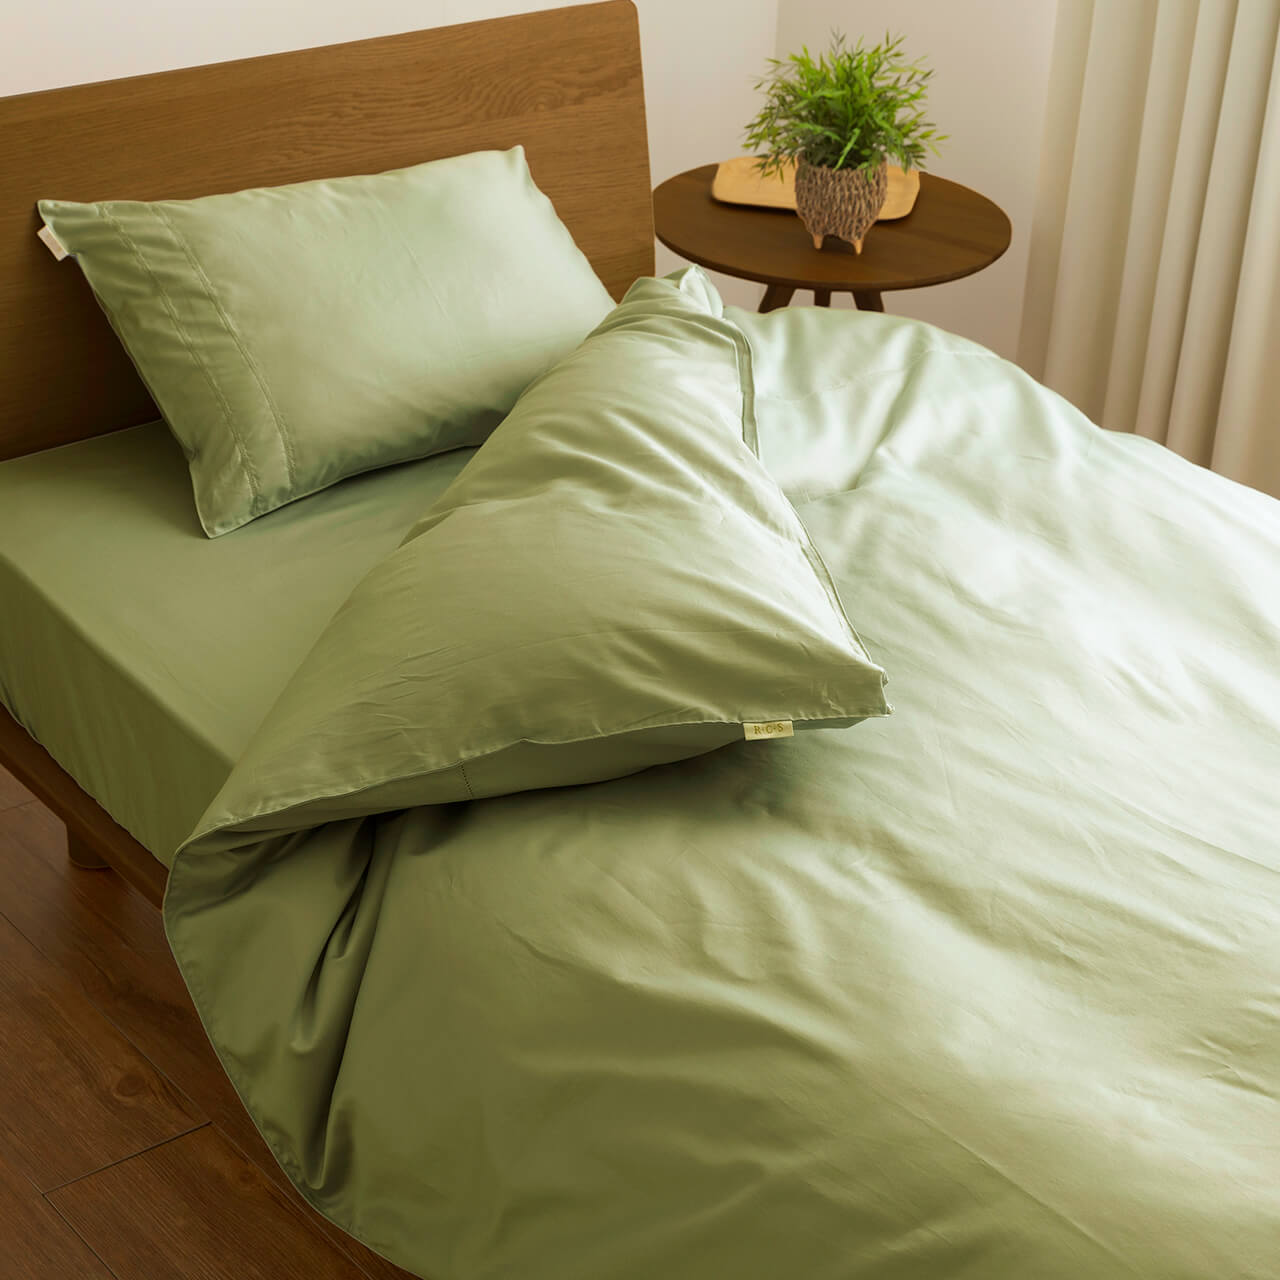 クイーンサイズ ベッド用寝具 – シーツjp